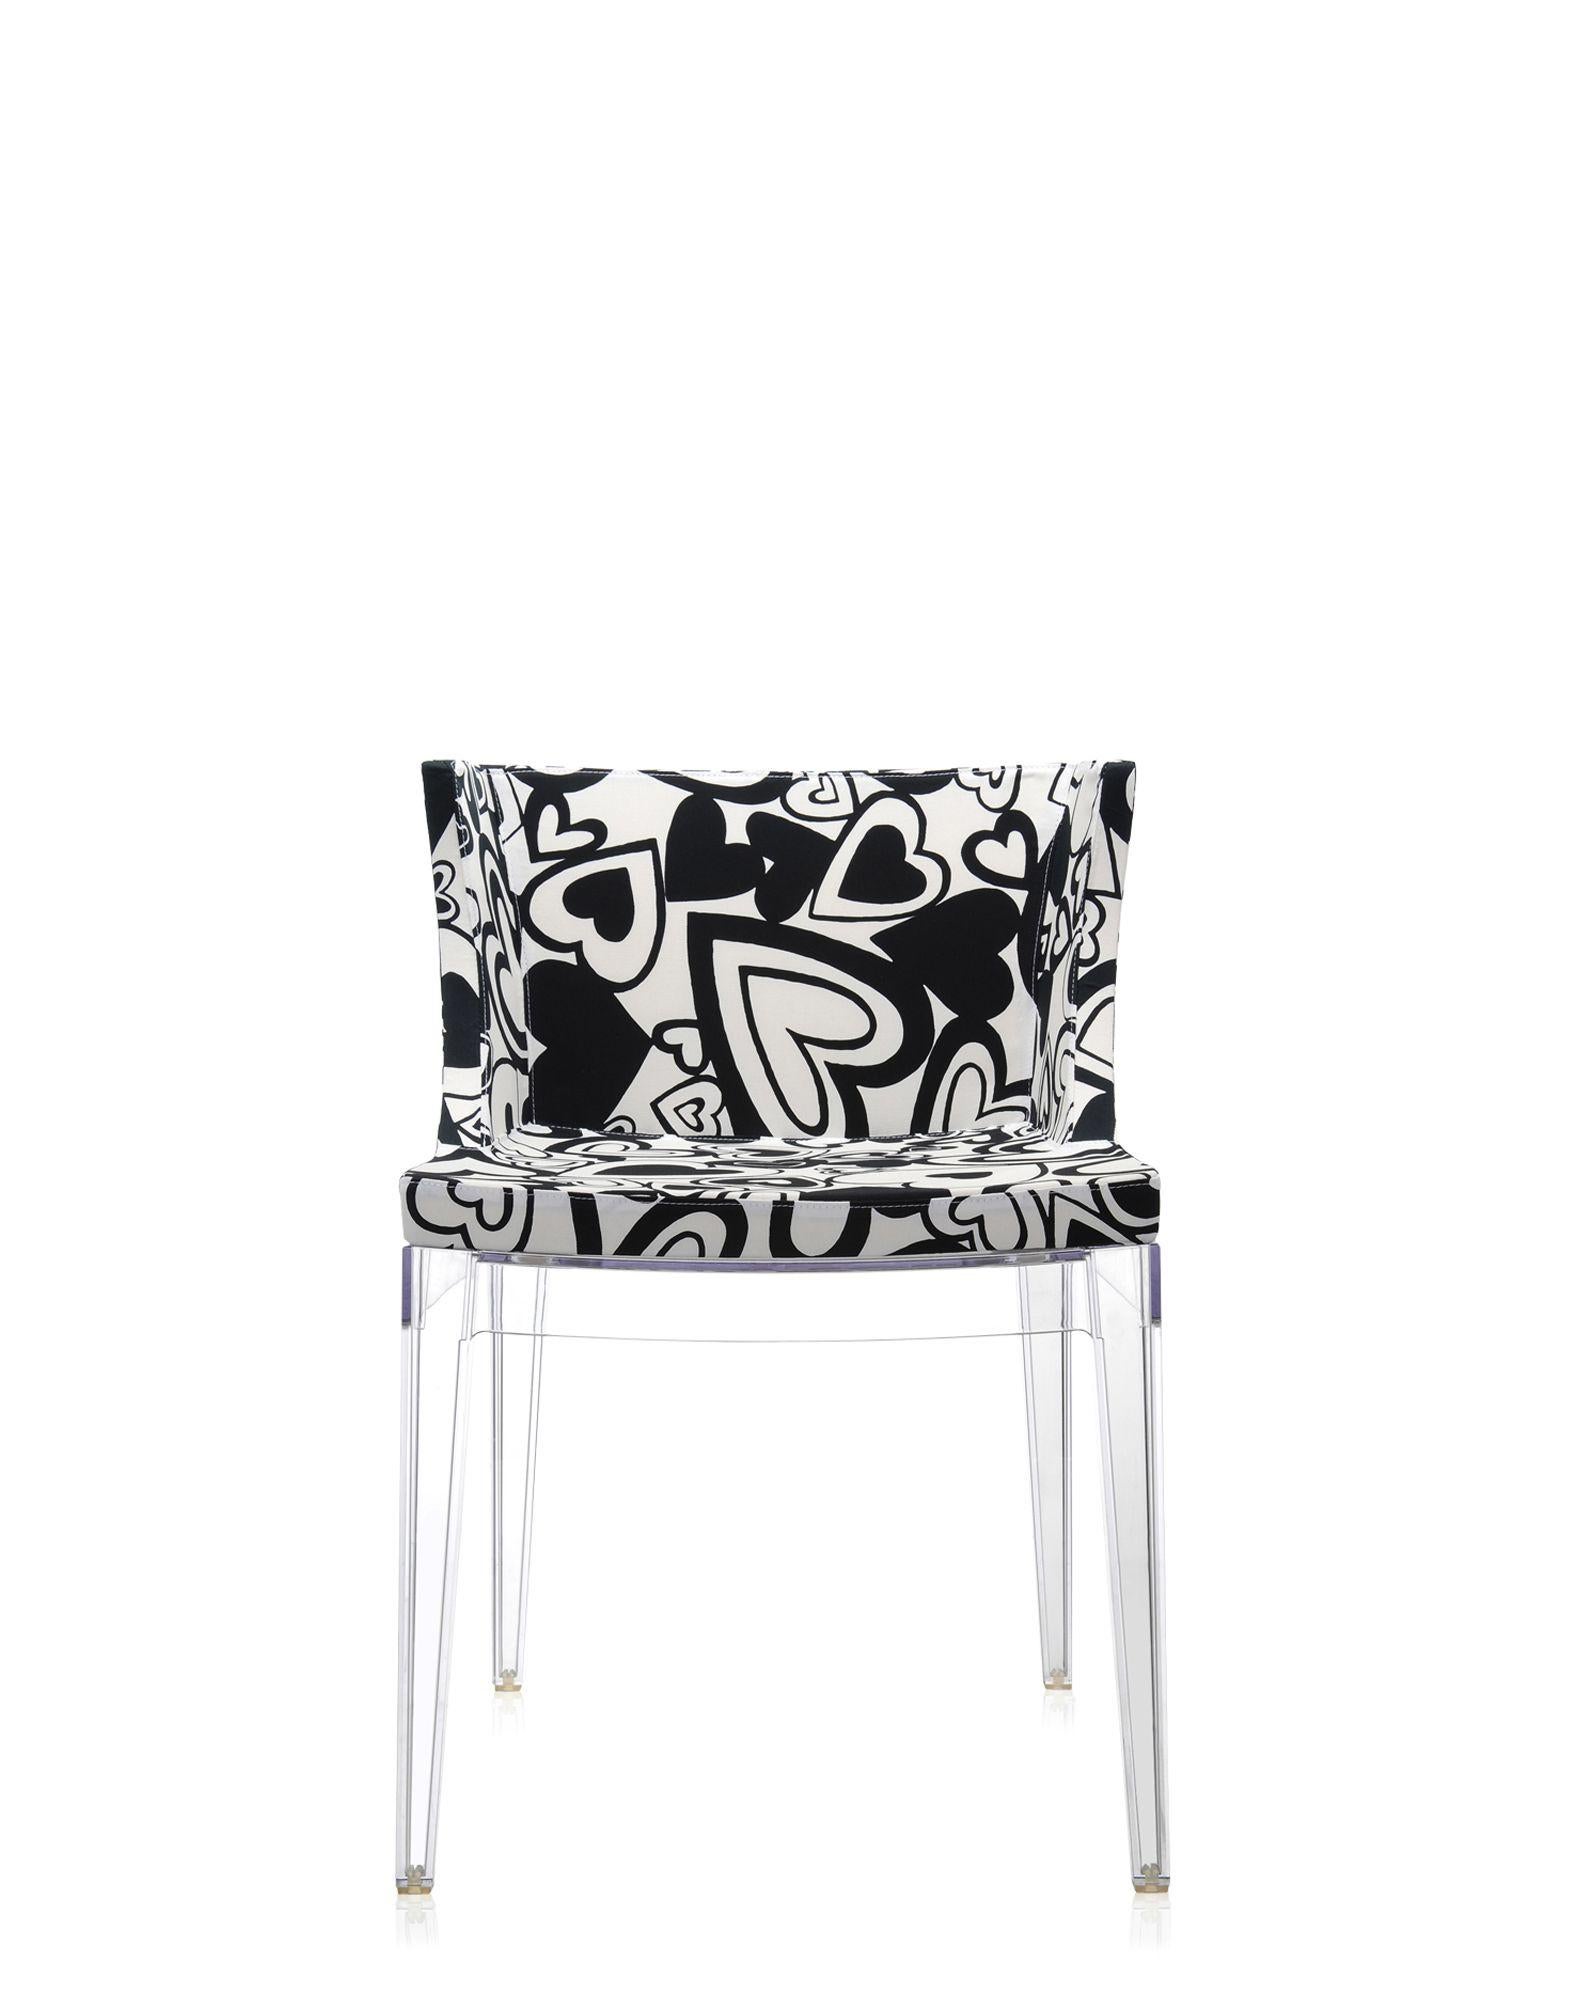 Le fauteuil Mademoiselle est habillé de la large gamme de tissus Memphis, conçus par Ettore Sottsass et Nathalie du Pasquier.
Il est proposé avec un cadre transparent ou noir.
  